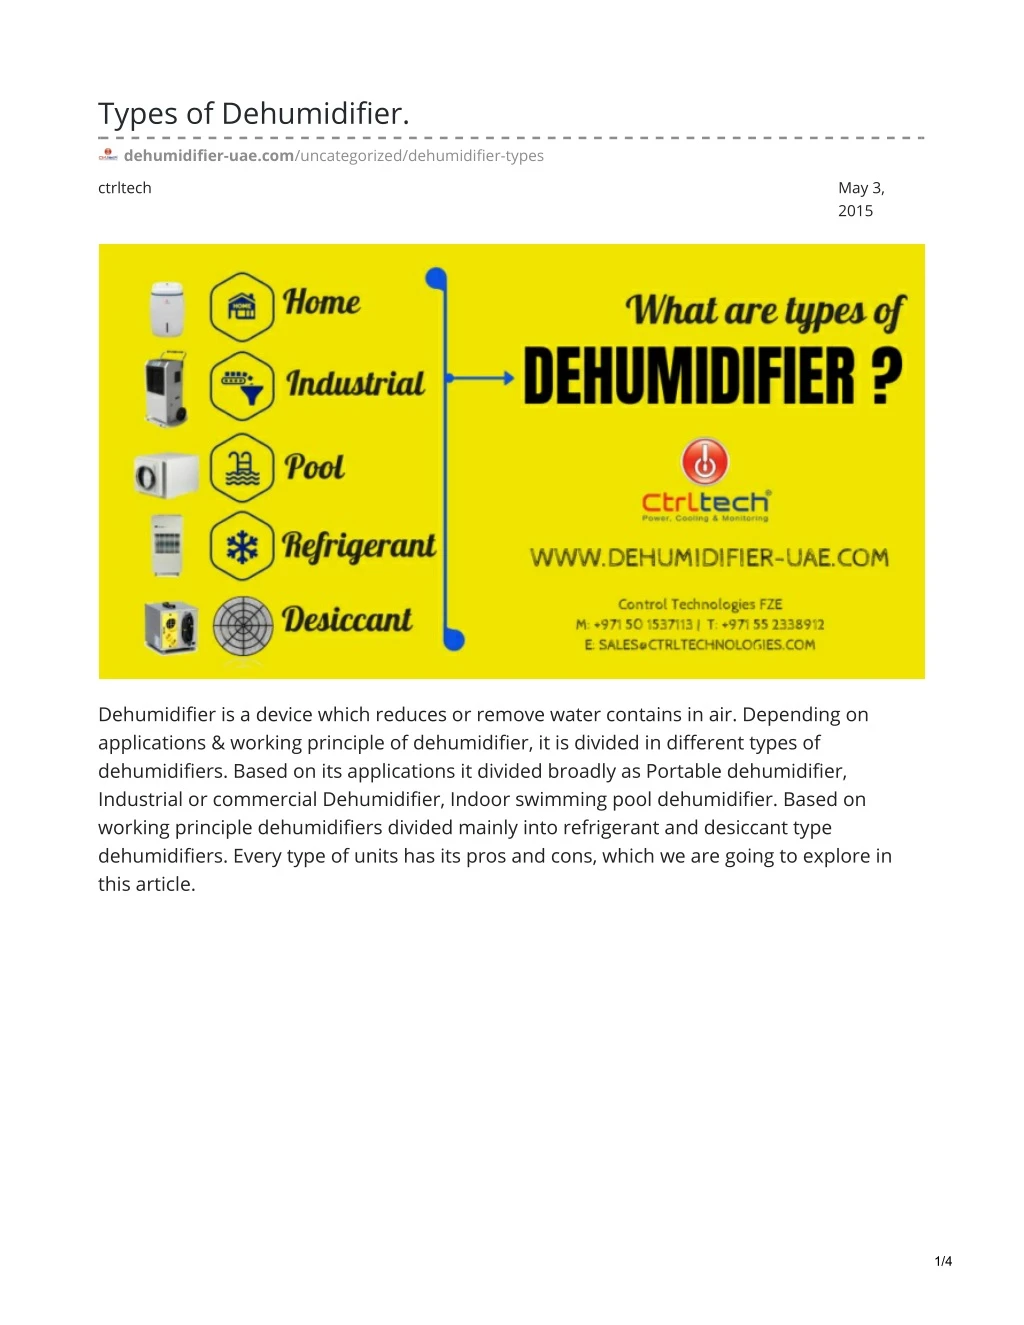 types of dehumidifier